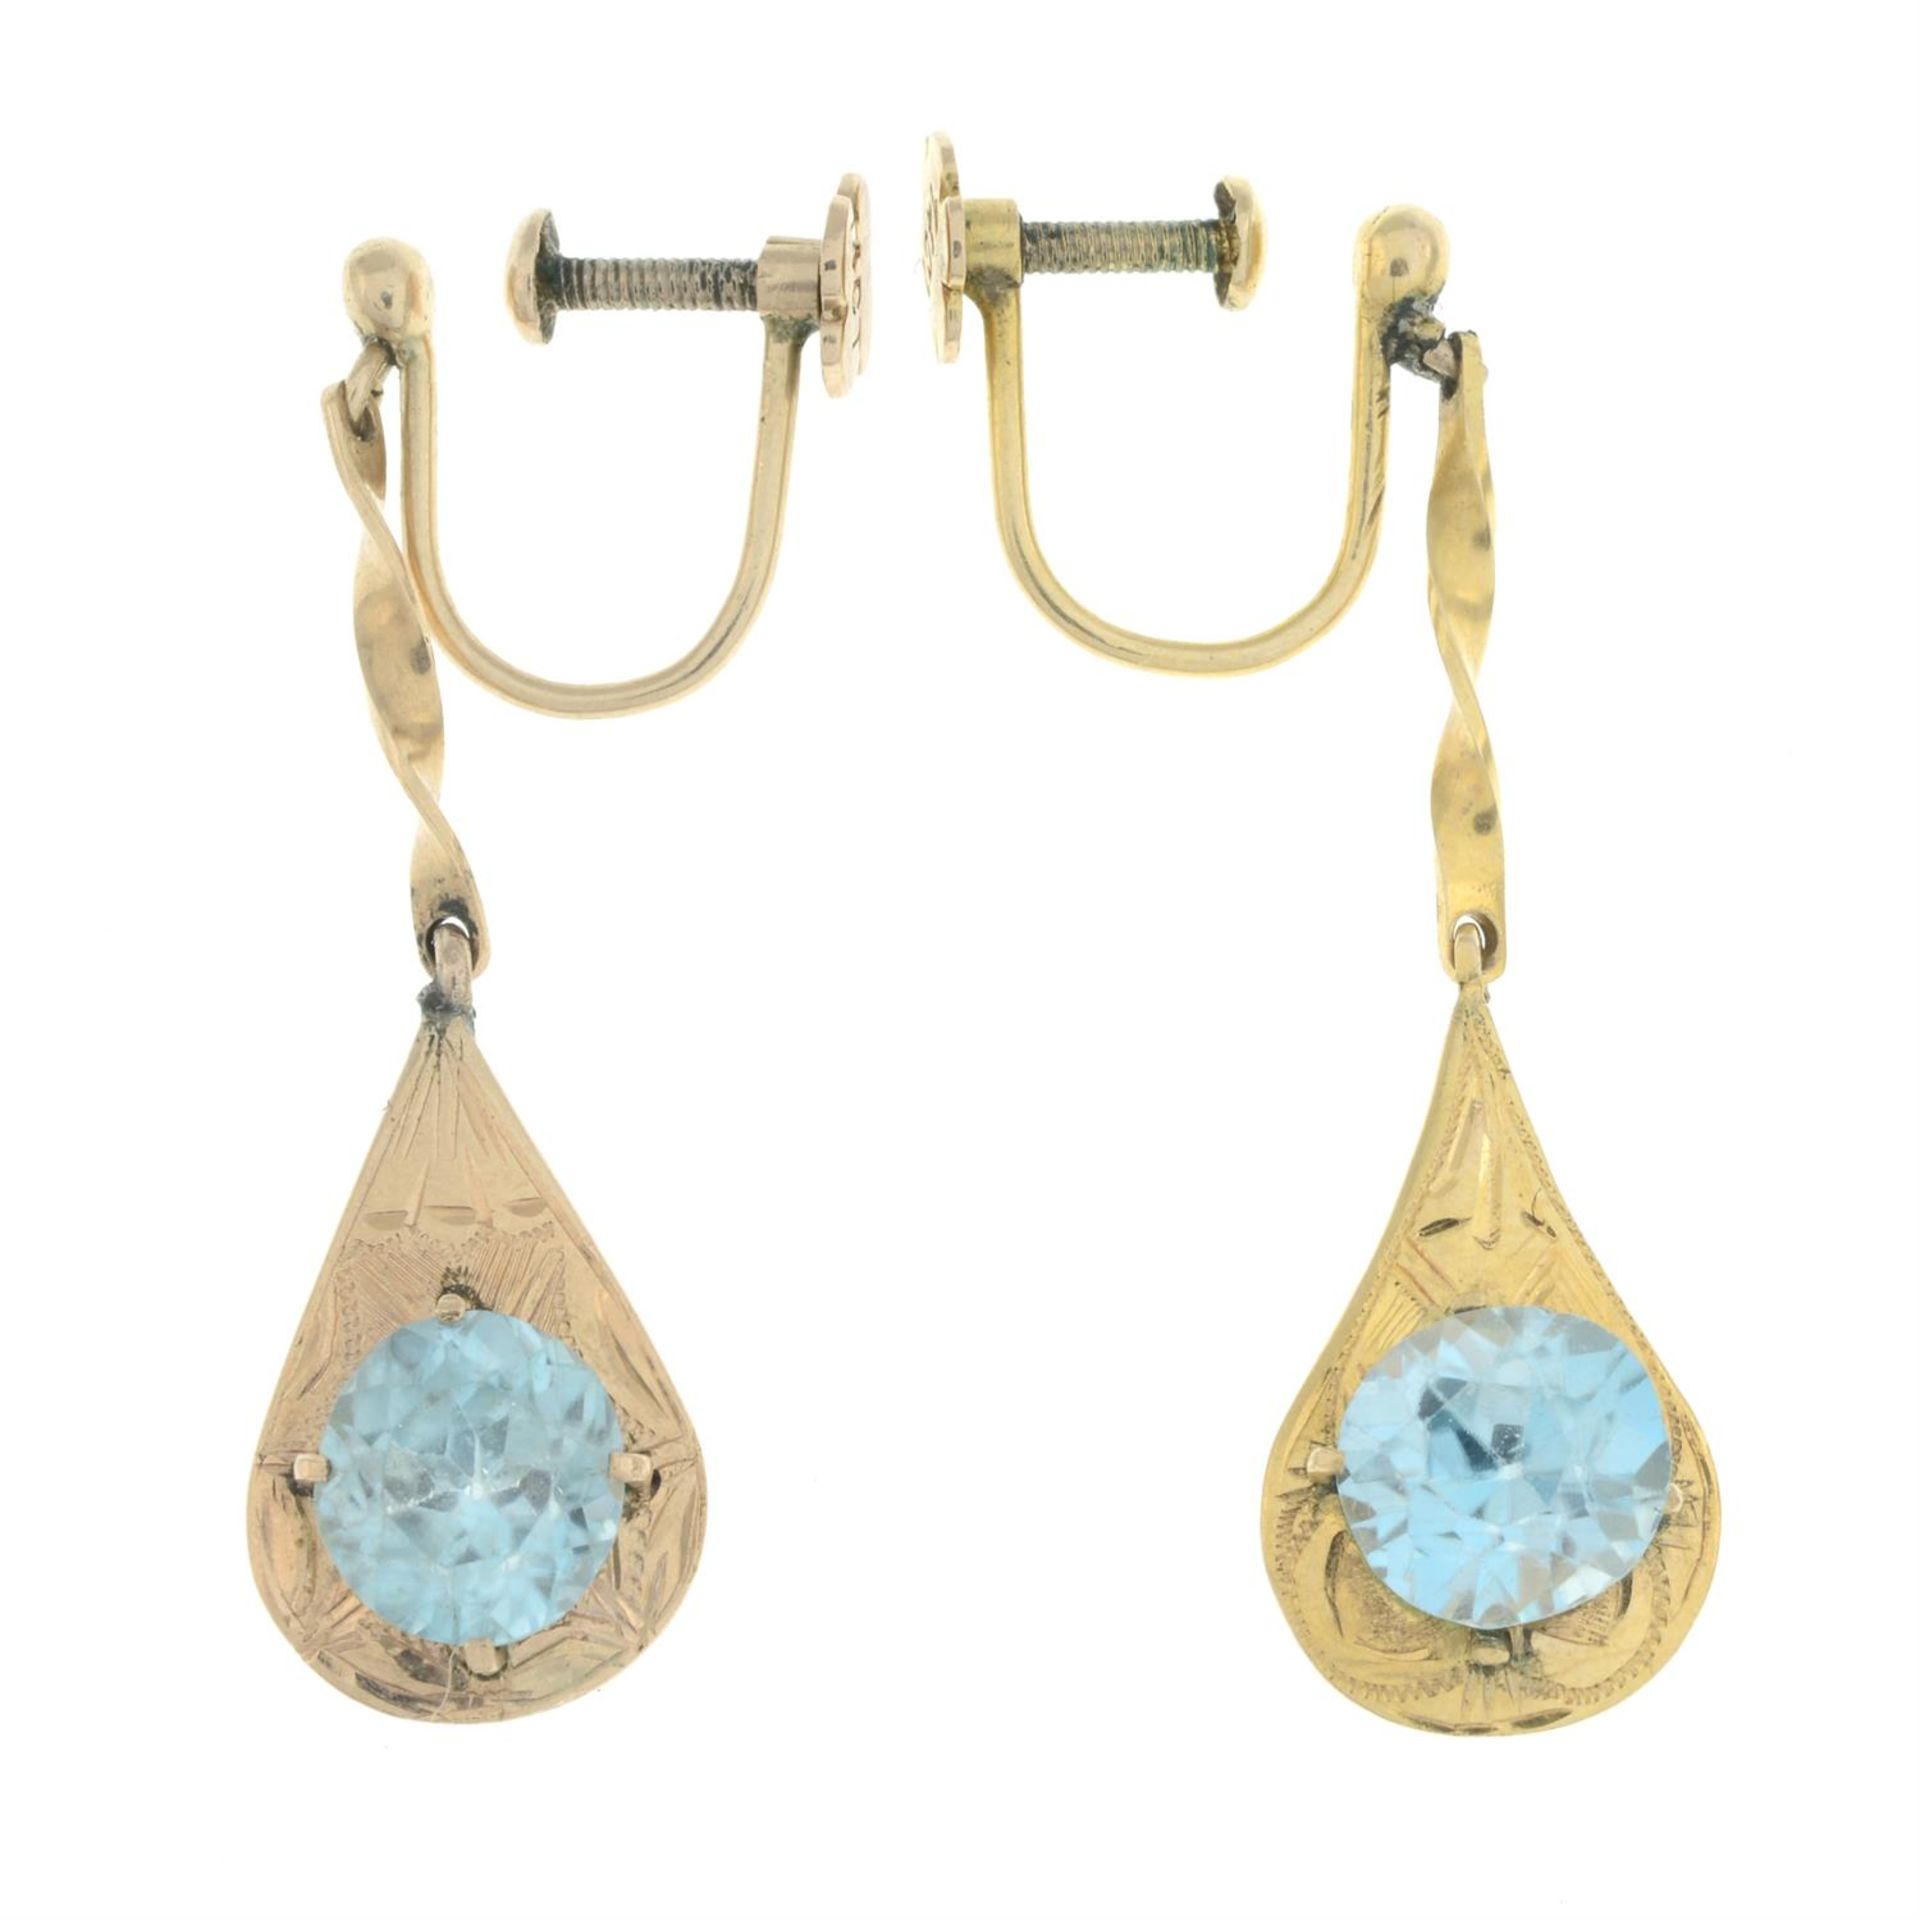 Blue zircon drop earrings